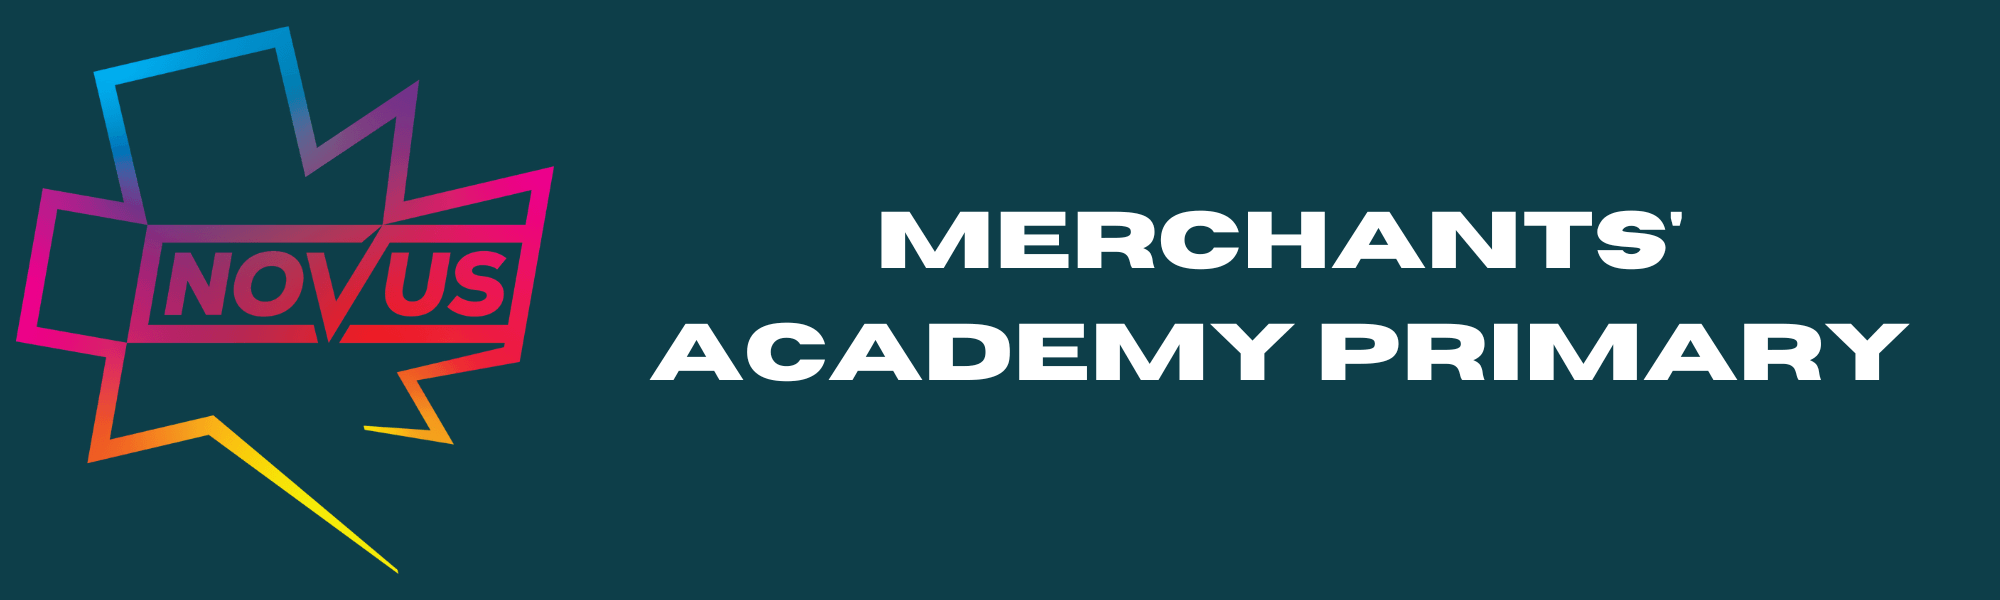 Merchants Academy Primary School Banner